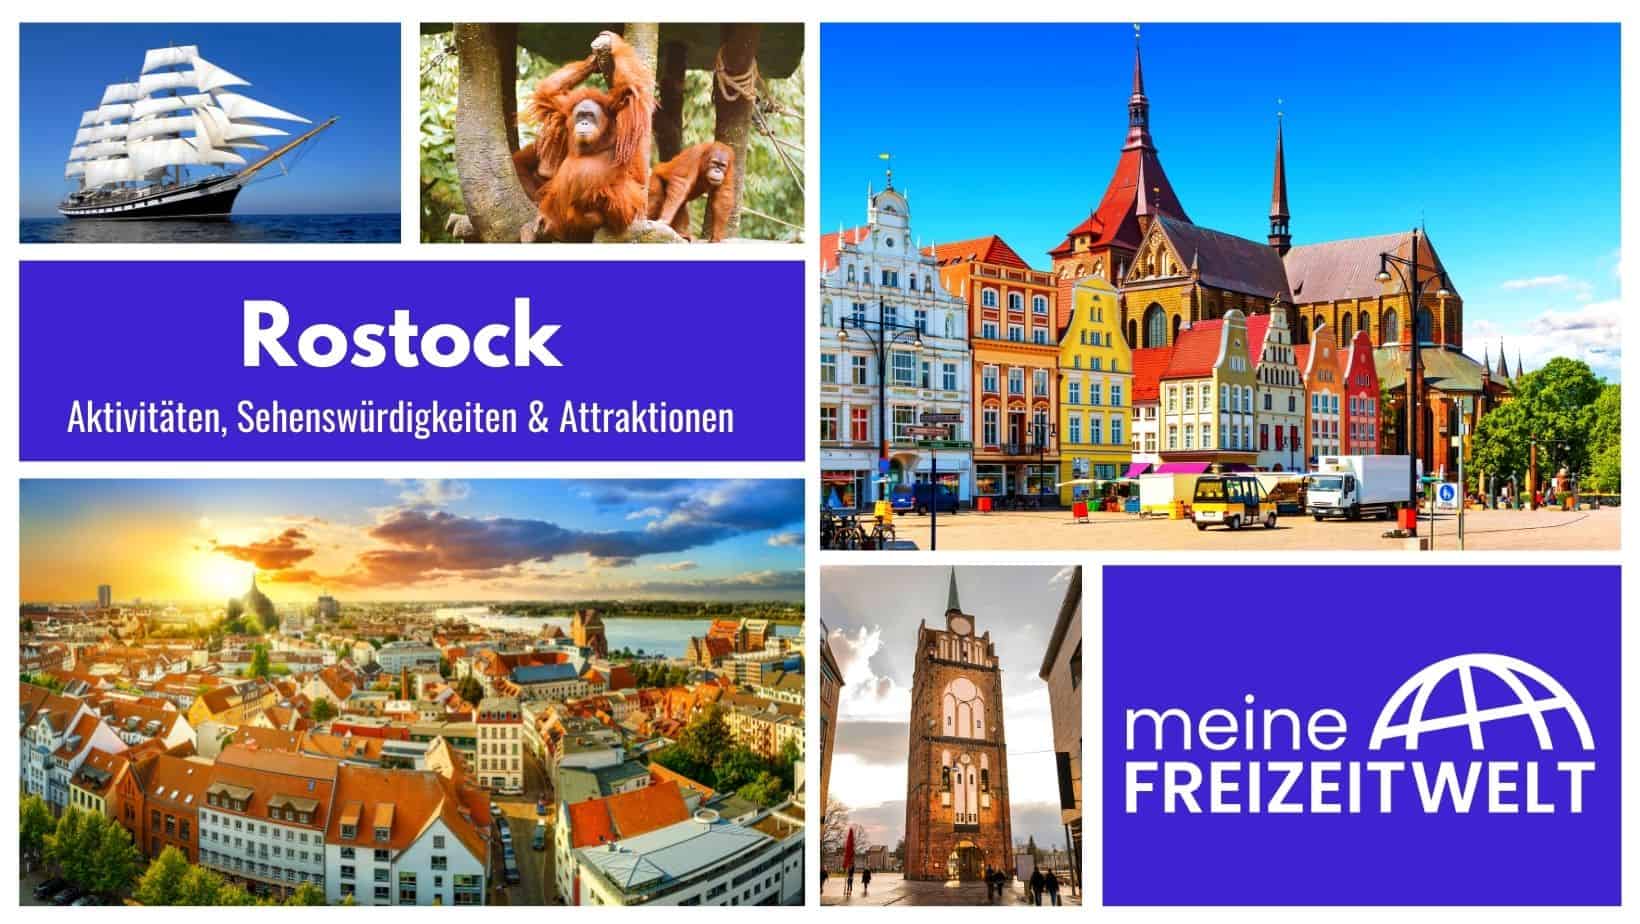 Rostock Aktivitäten, Sehenswürdigkeiten & Attraktionen